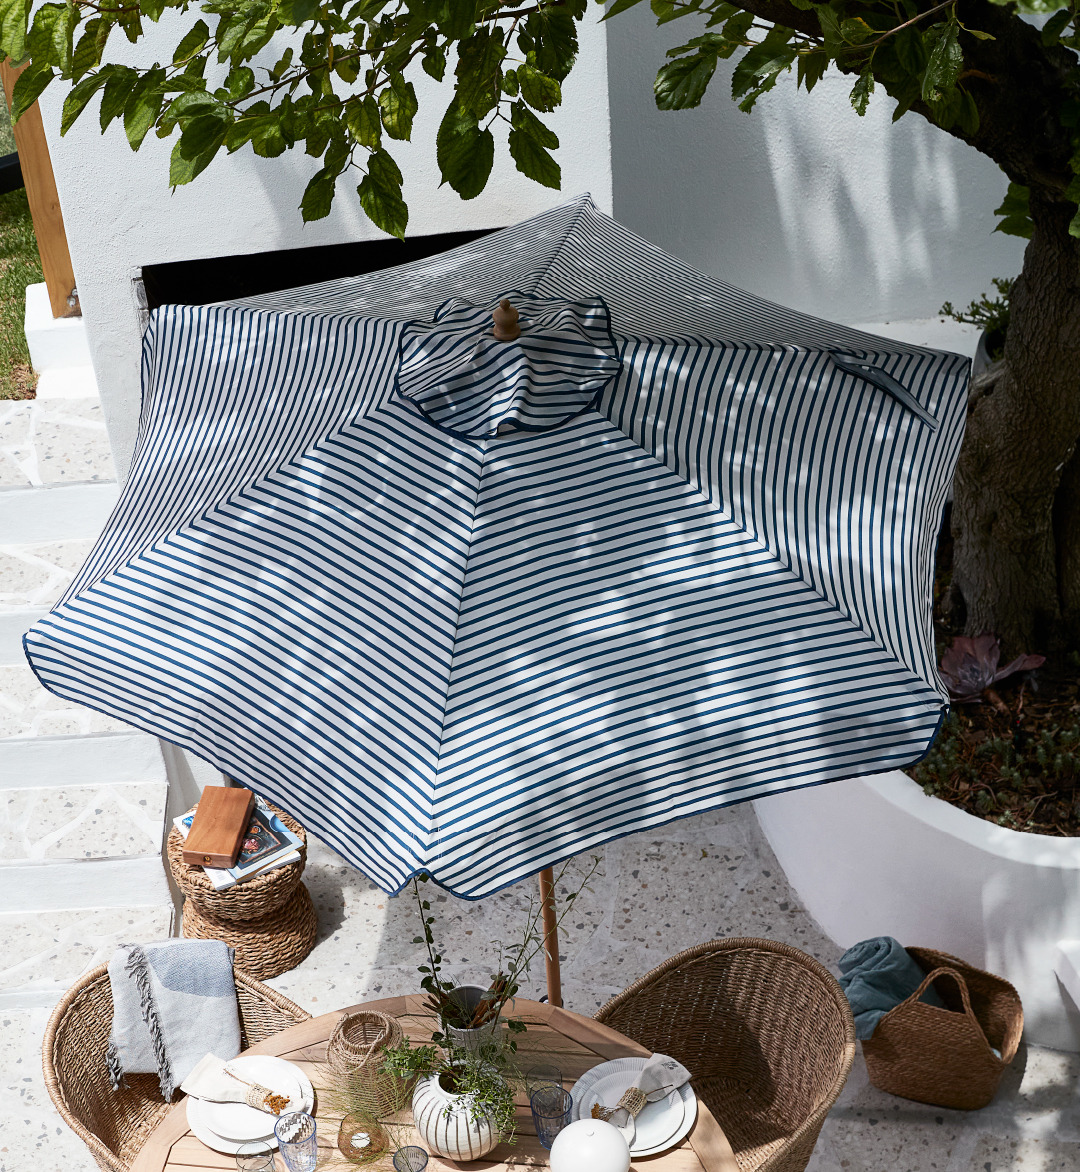  Елегантна парасолька у смужку білого та синього кольору, відома як Парасоля SMYGEHUK, створює свіжий та стильний акцент у вашому саду чи на терасі, захищаючи від сонця та надаючи привабливий вигляд вашому зовнішньому простору.